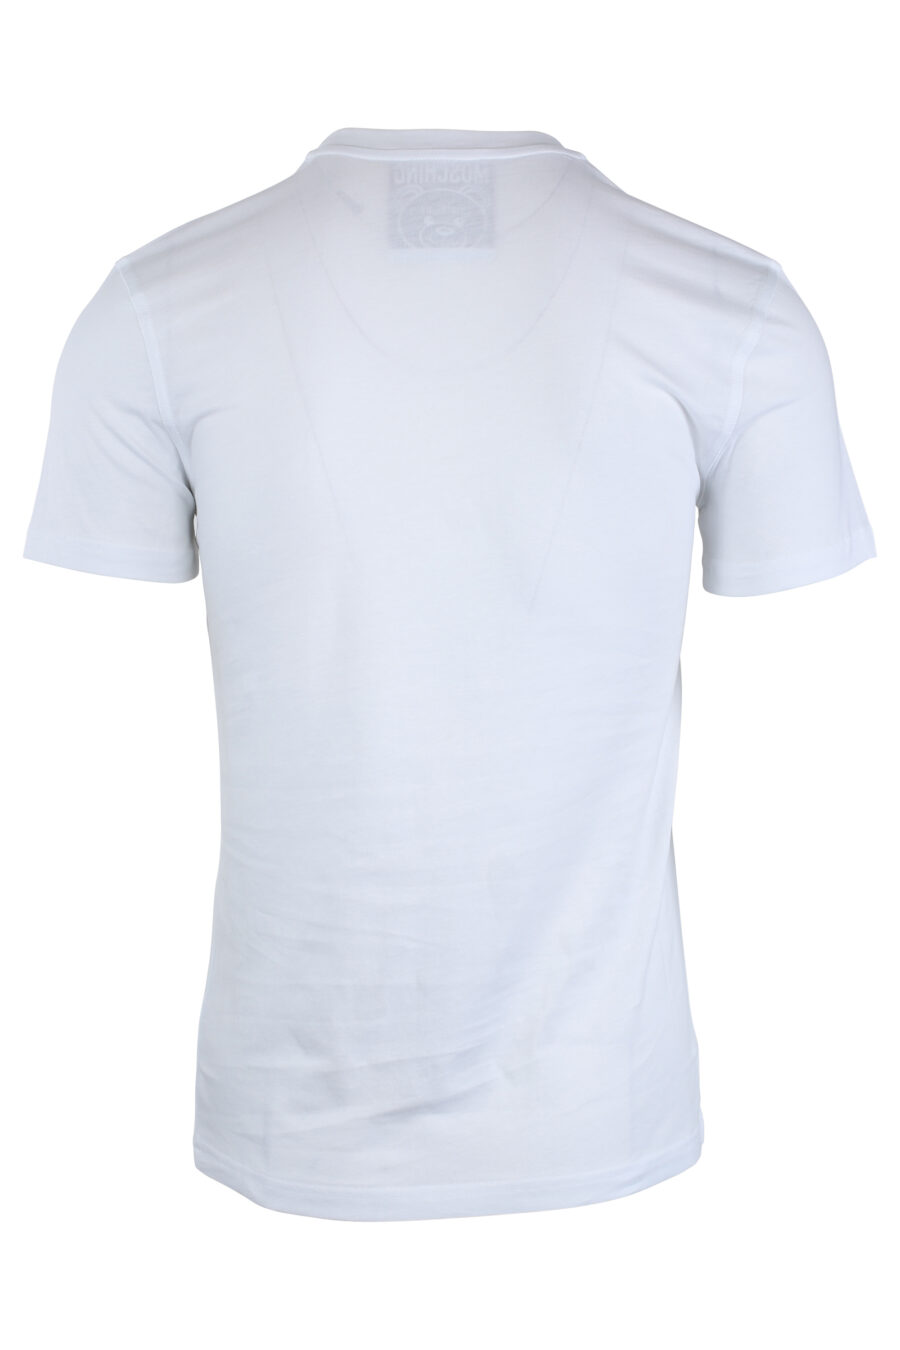 Weißes T-Shirt mit einfarbigem Bären-Maxilogo - IMG 1654